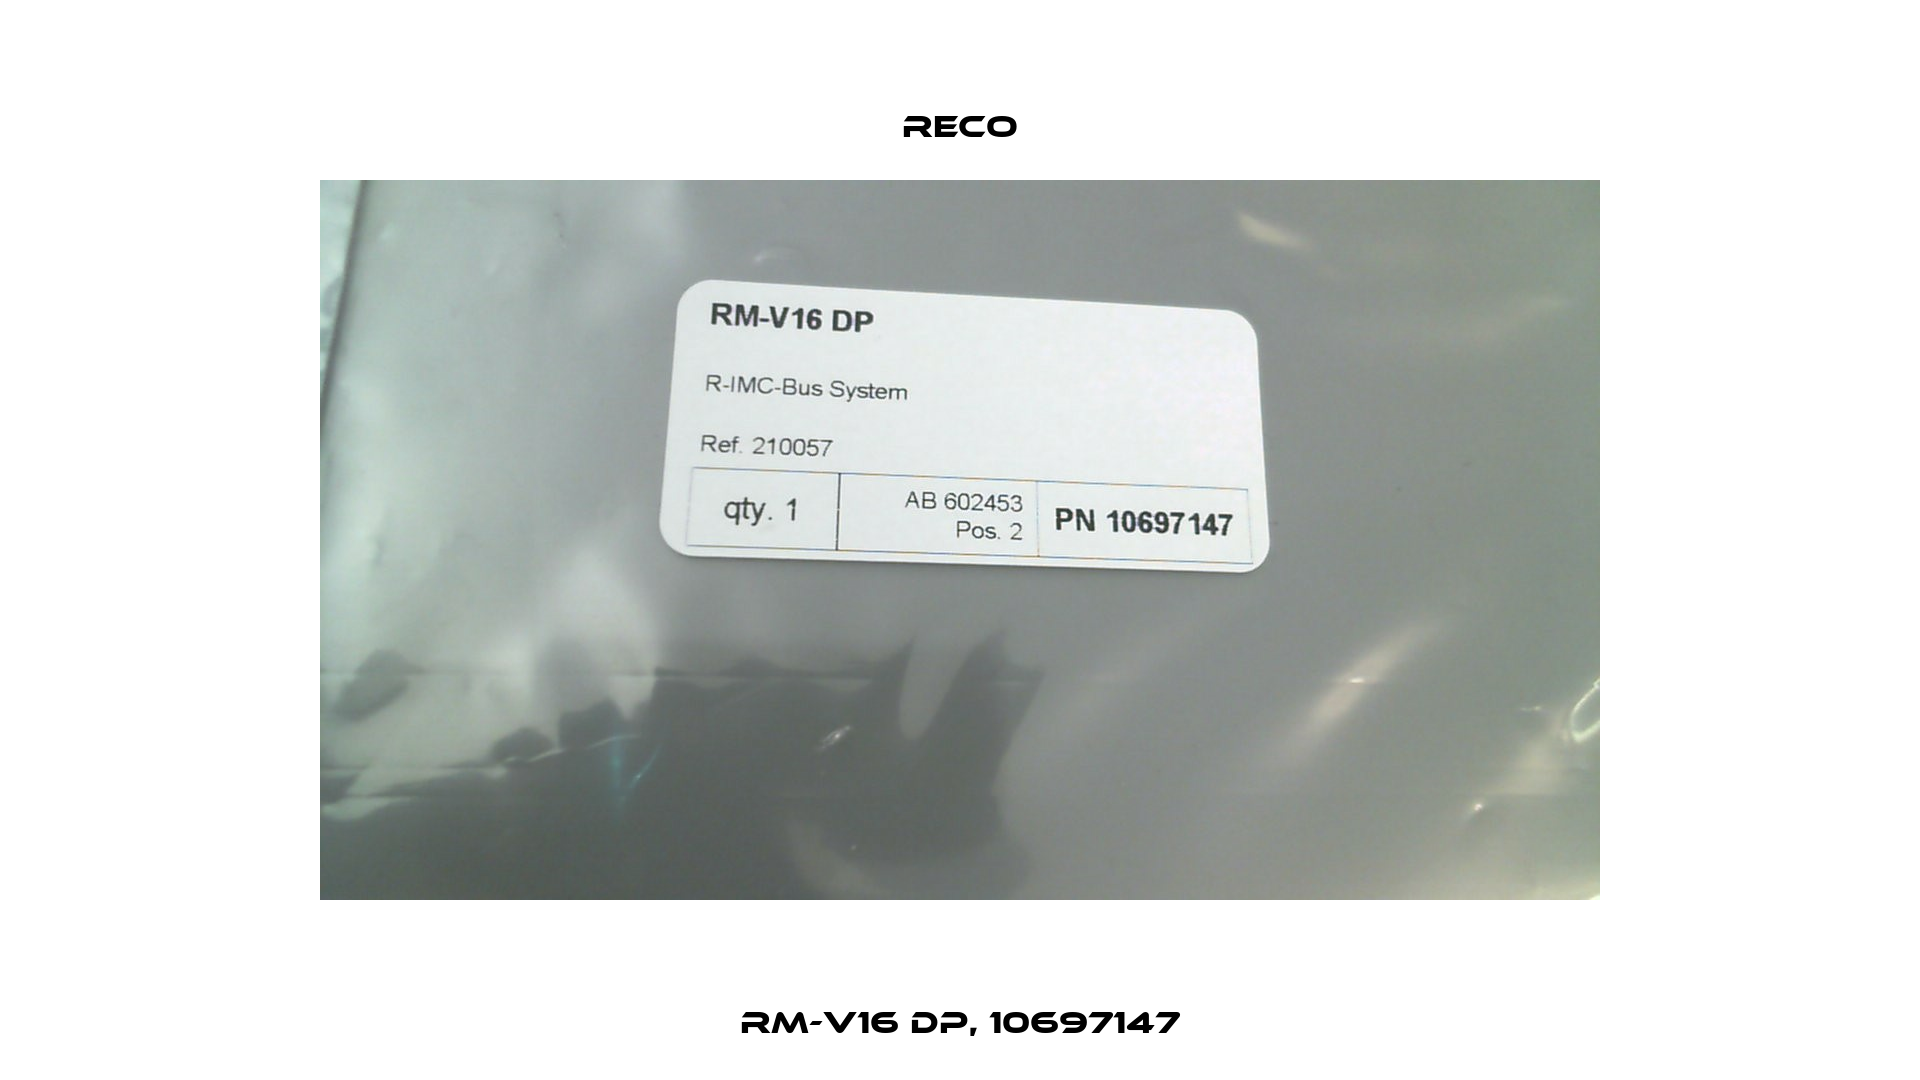 RM-V16 DP, 10697147 Reco